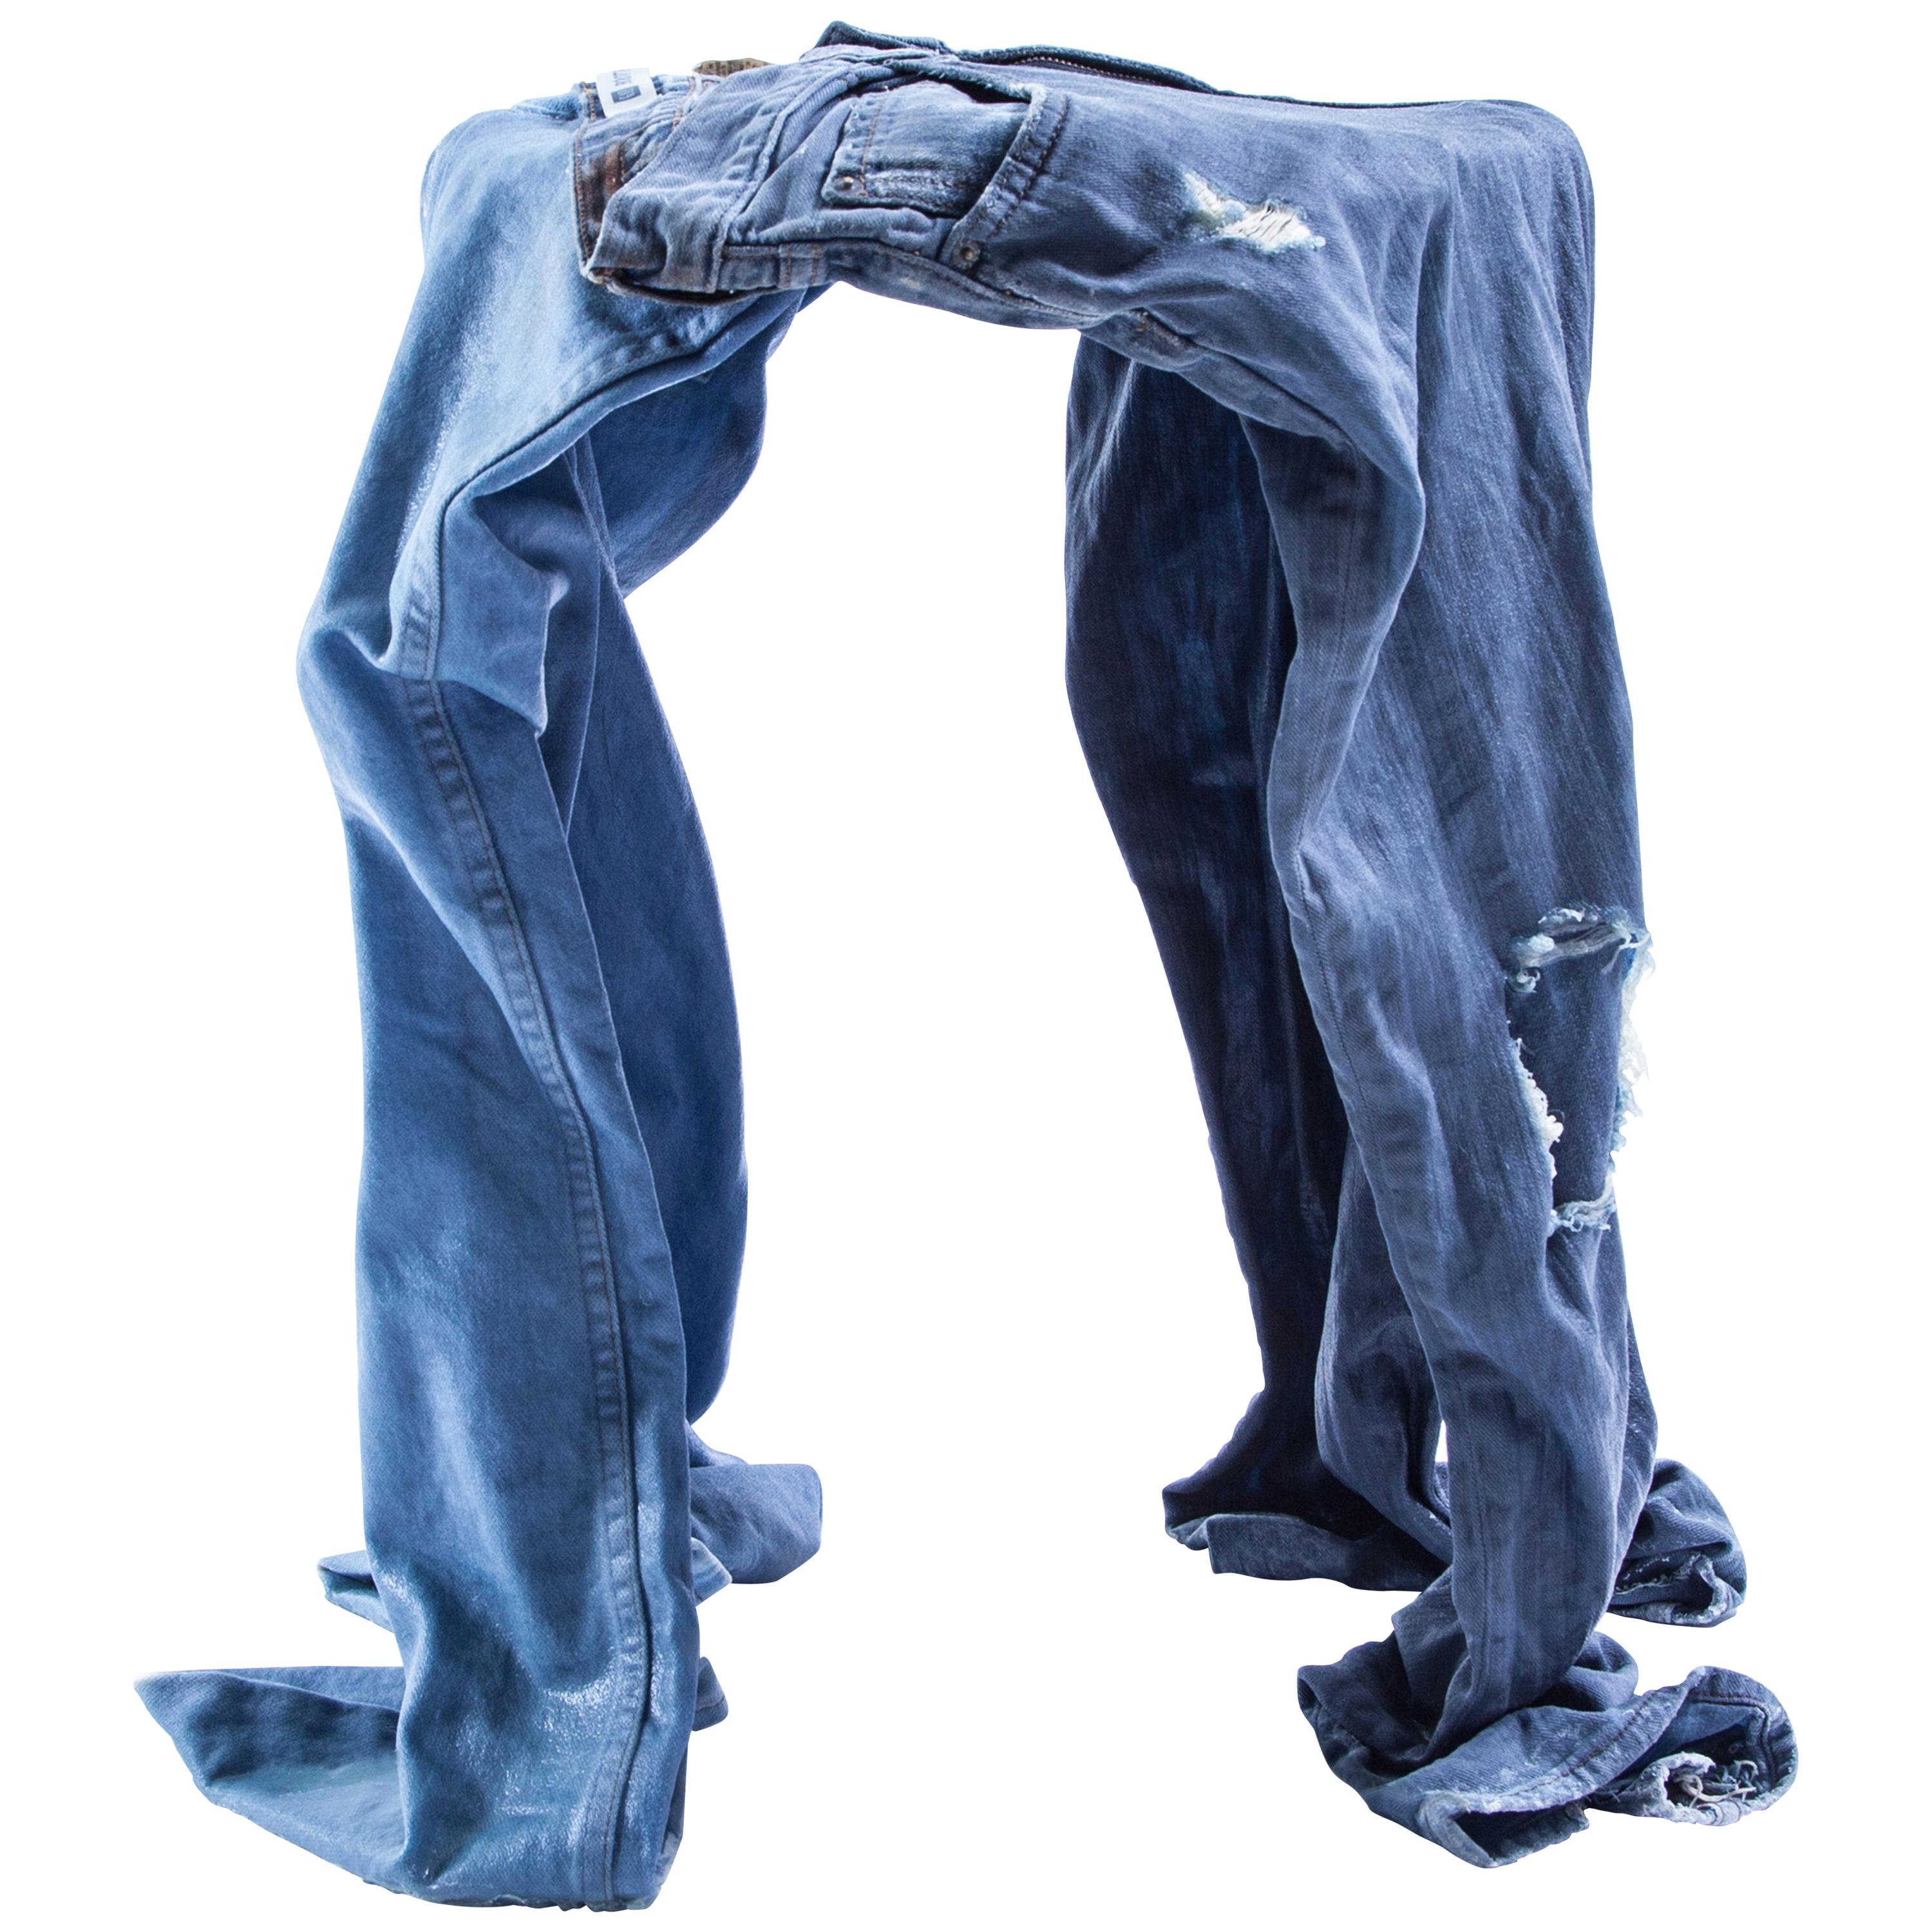 Tabouret contemporain en denim, fabriqué à partir de jeans bleus " usés " et renforcés en vente